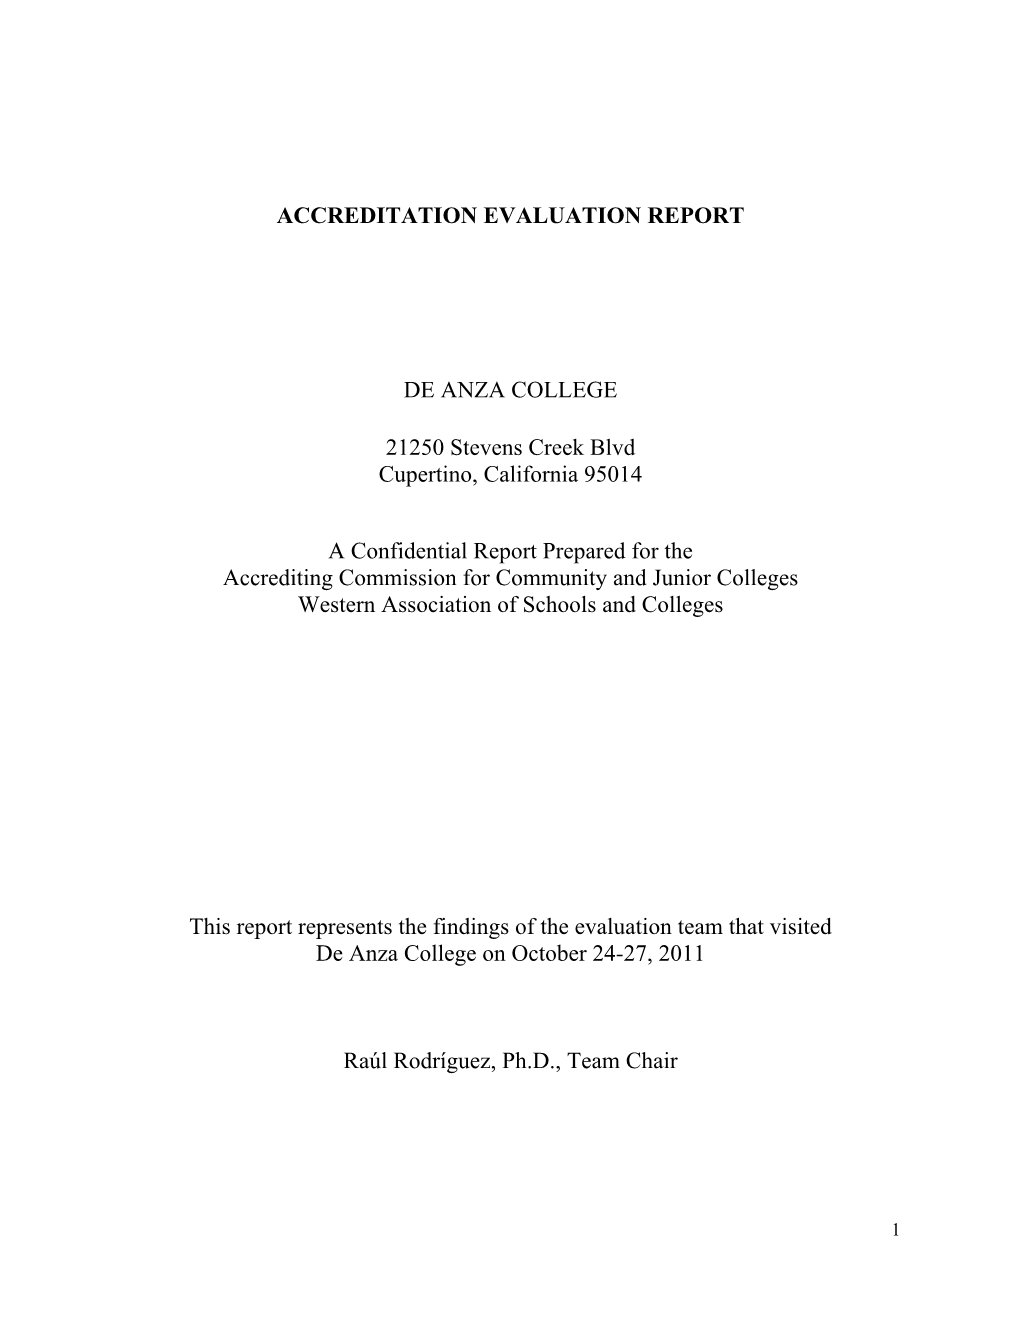 Accreditation Evaluation Report De Anza College